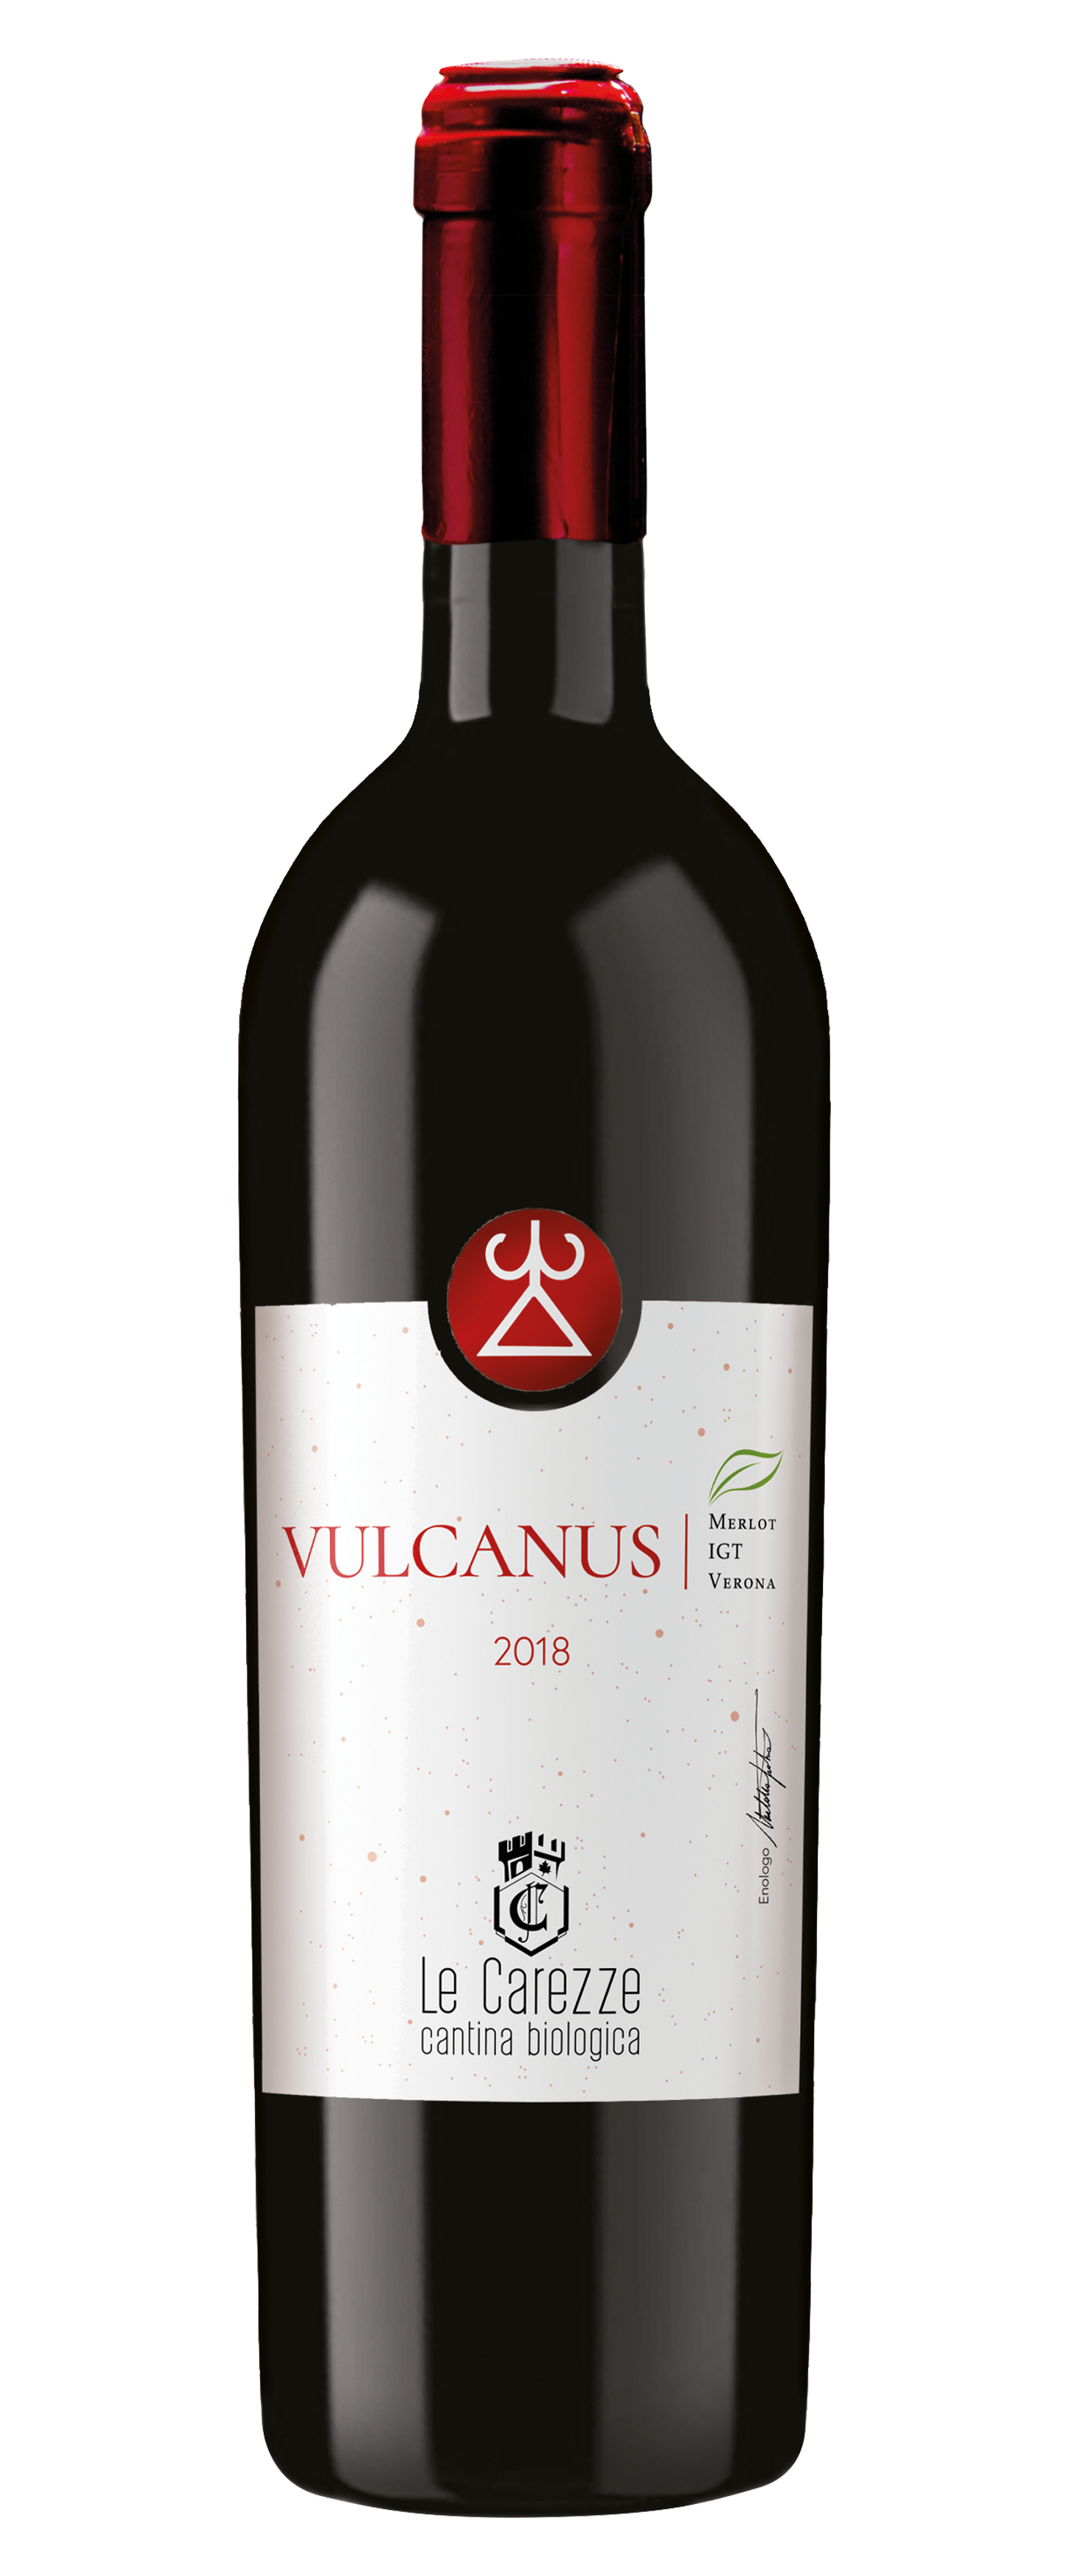 Bottle of wine Vulcanus 2018